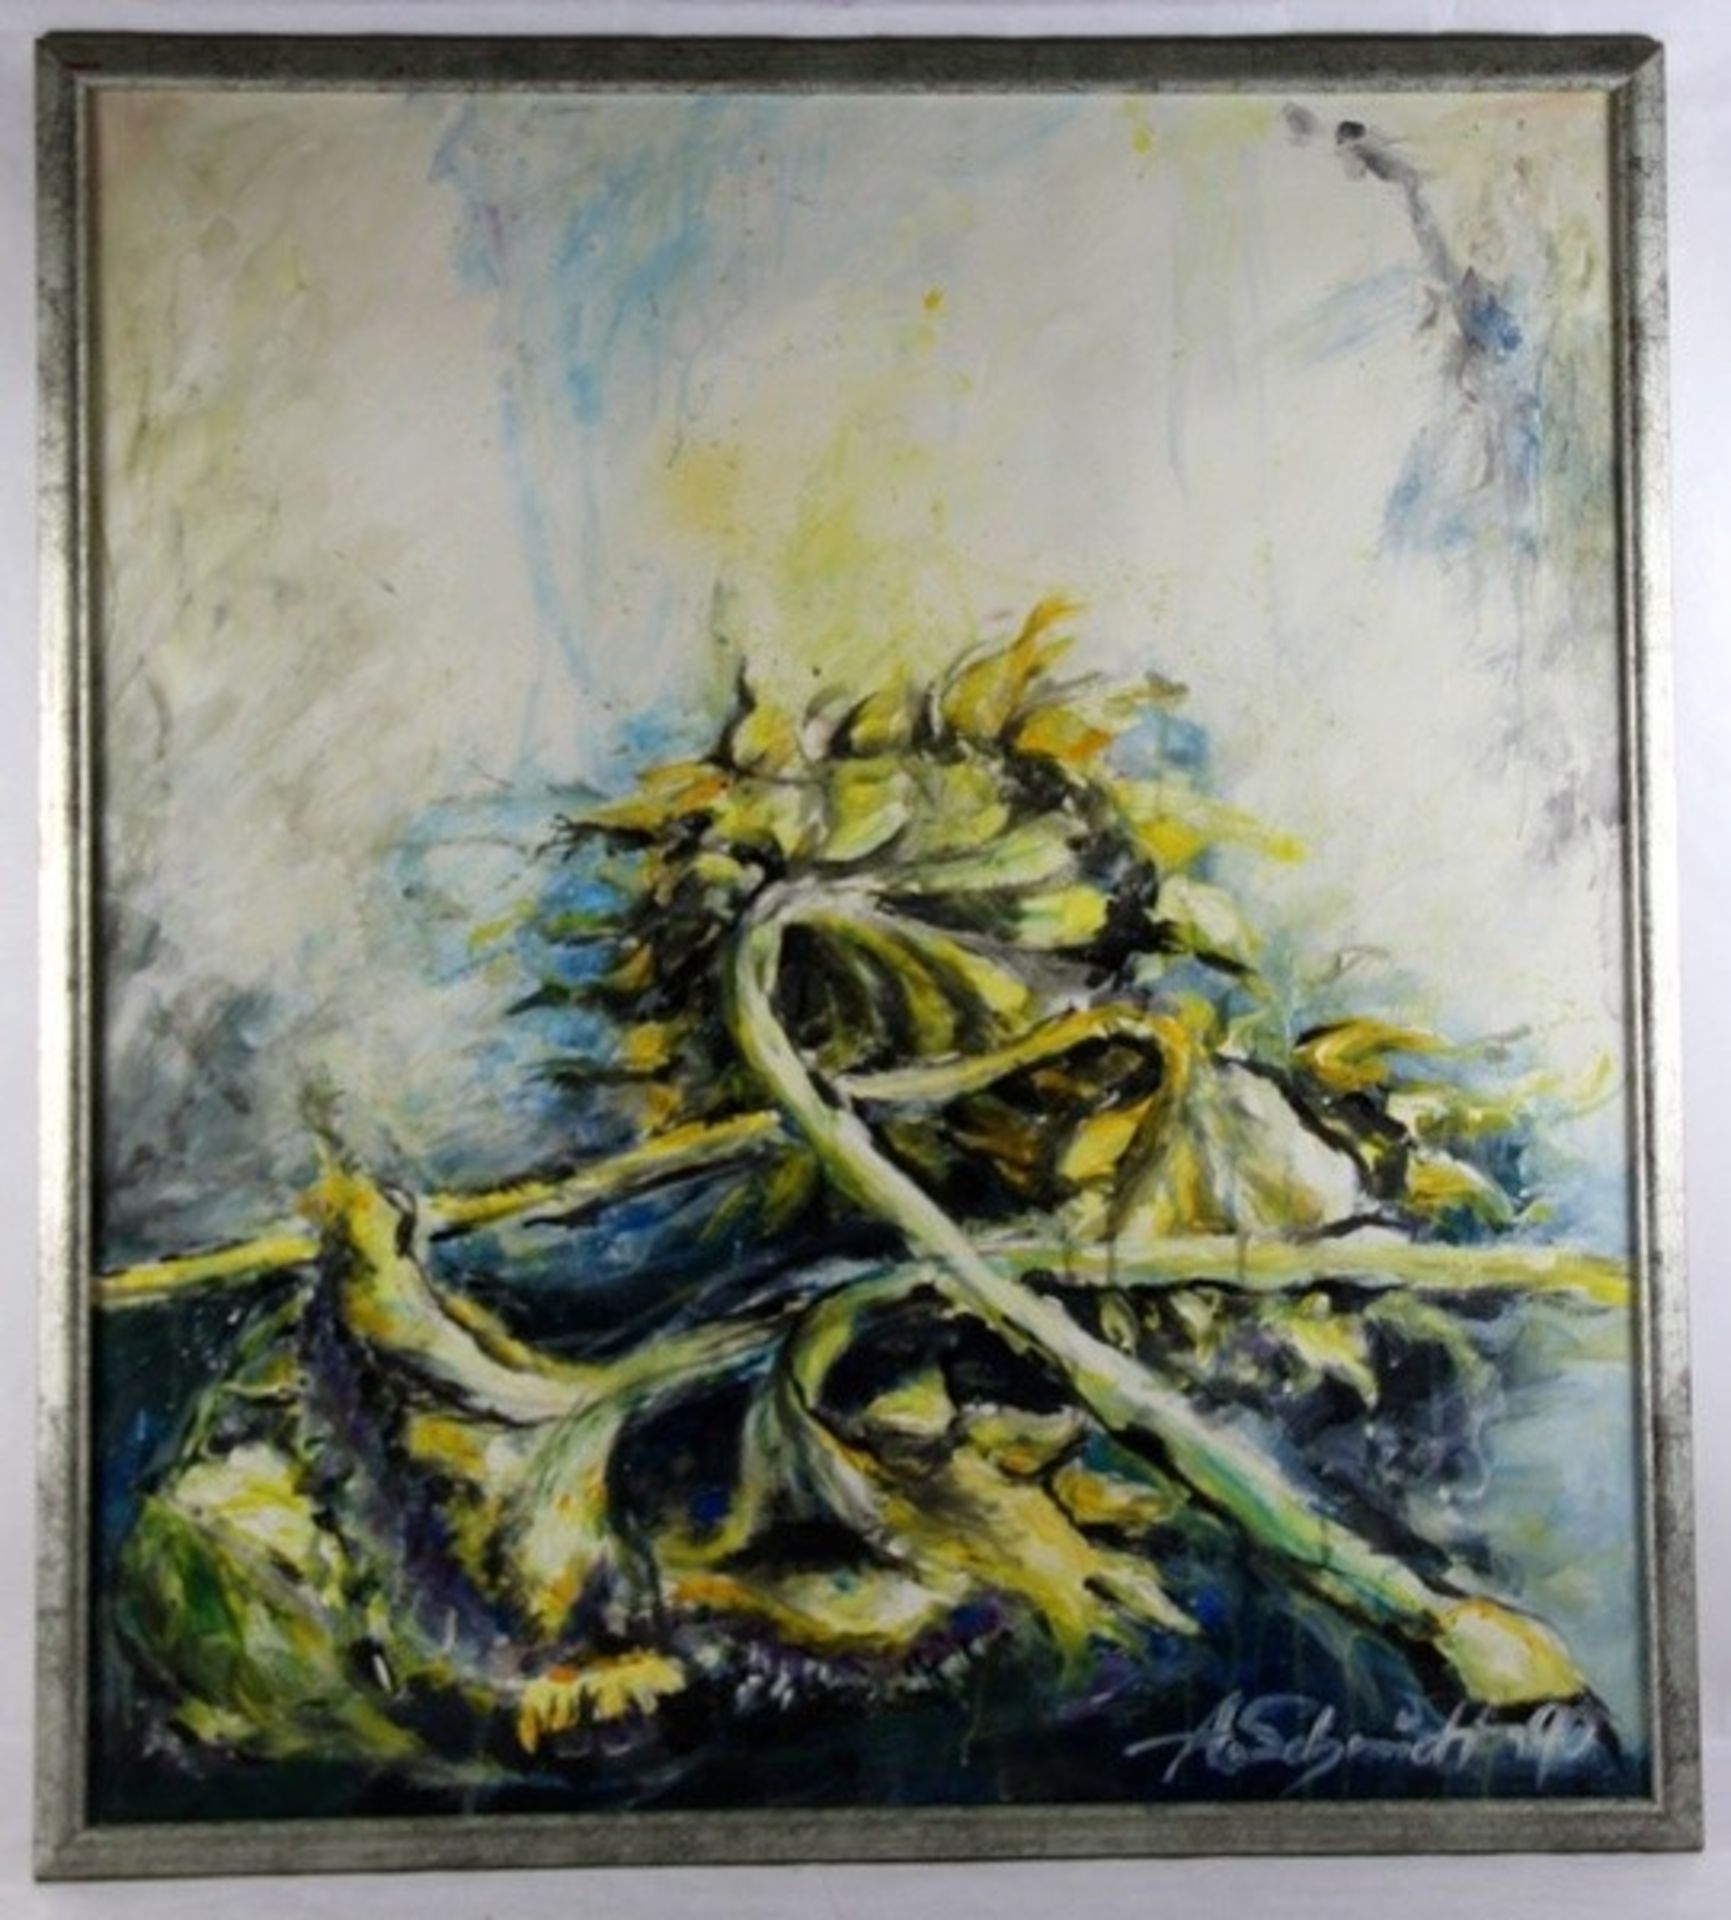 Unbekannter Künstler1990, übereinanderliegende Sonnenblumen, unten rechts signiert A. Schmi